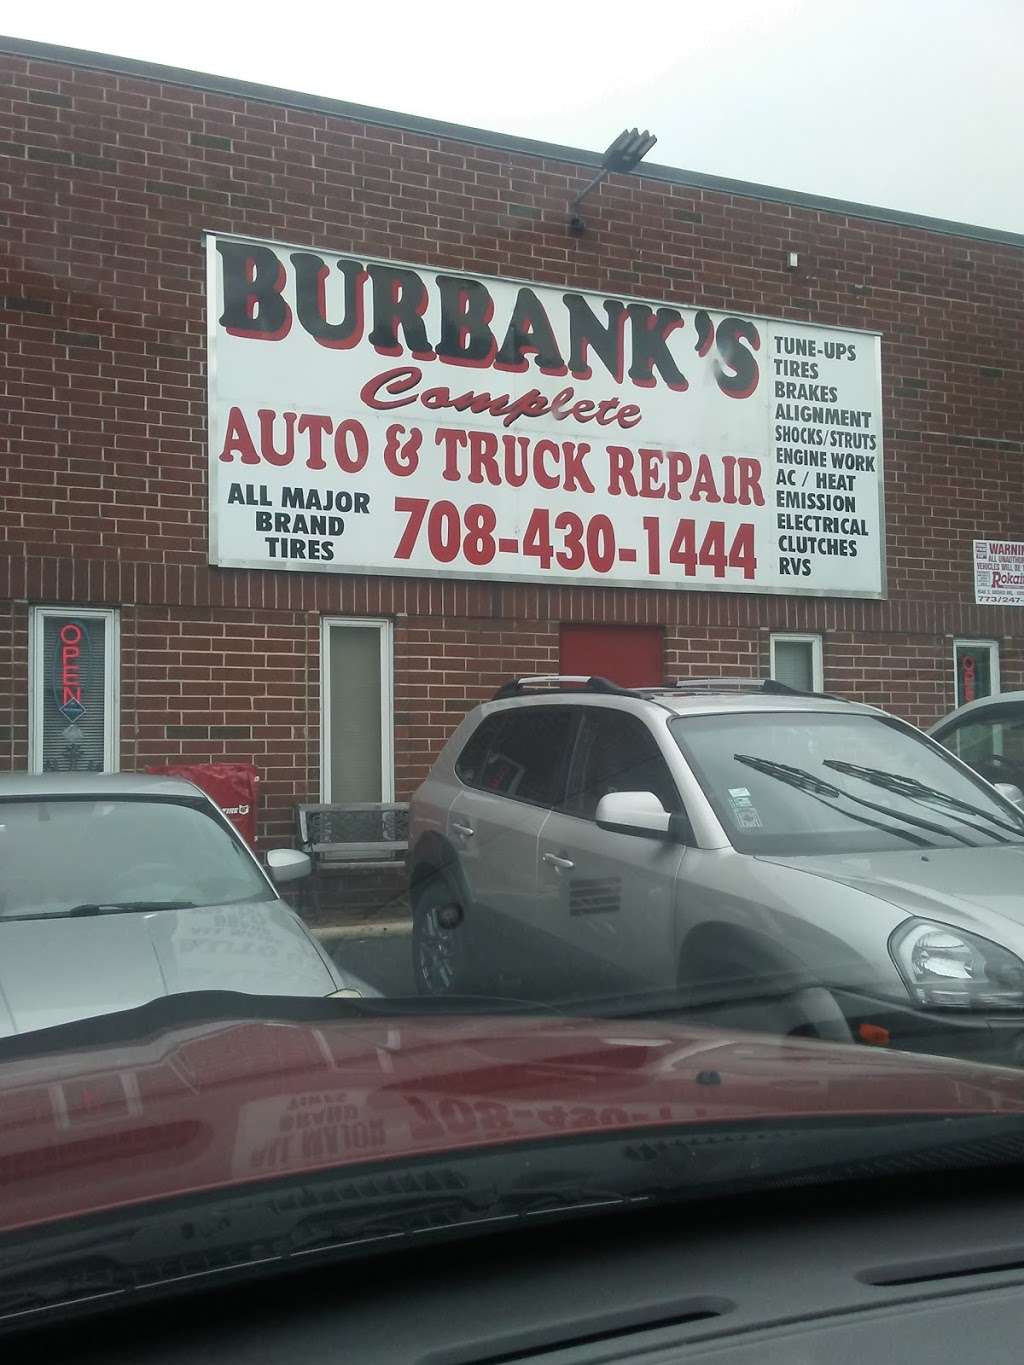 Burbanks Complete Auto-Truck | 8410 S Oketo Ave, Bridgeview, IL 60455 | Phone: (708) 430-1444